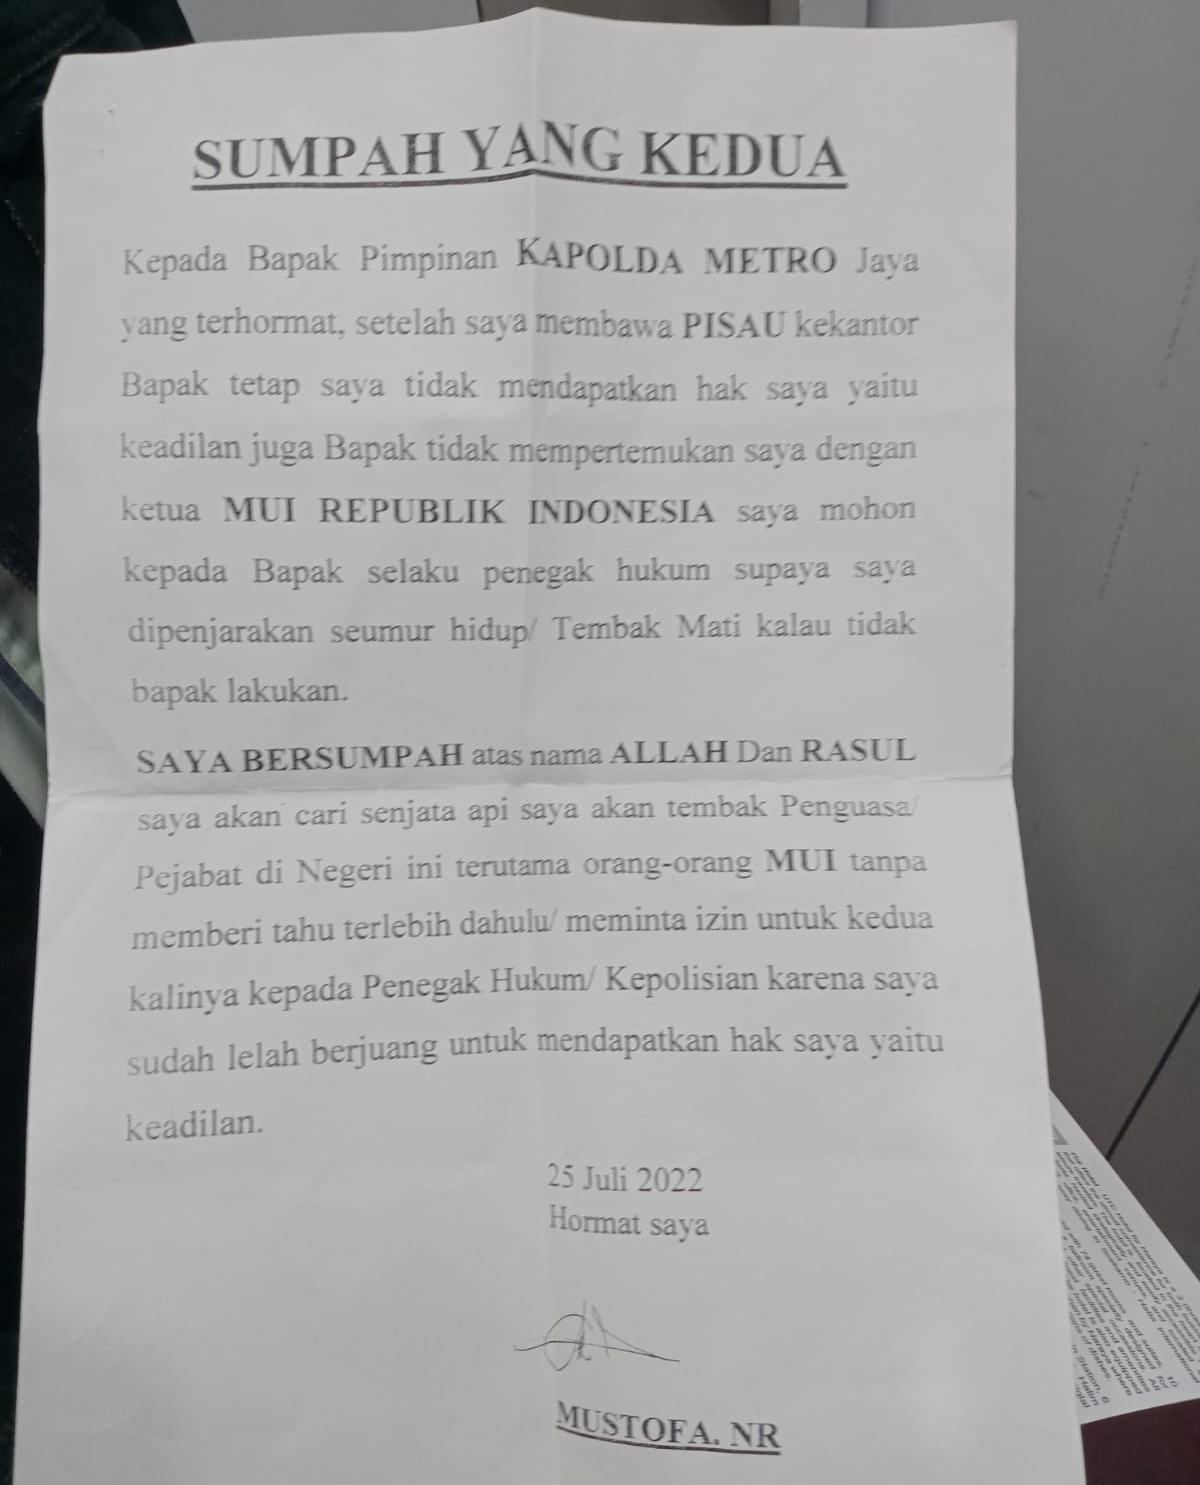 Rekam Jejak Pelaku Penembakan Kantor MUI, Rusak Fasilitas Kantor DPRD Lampung, Tulis Sumpah yang Kedua